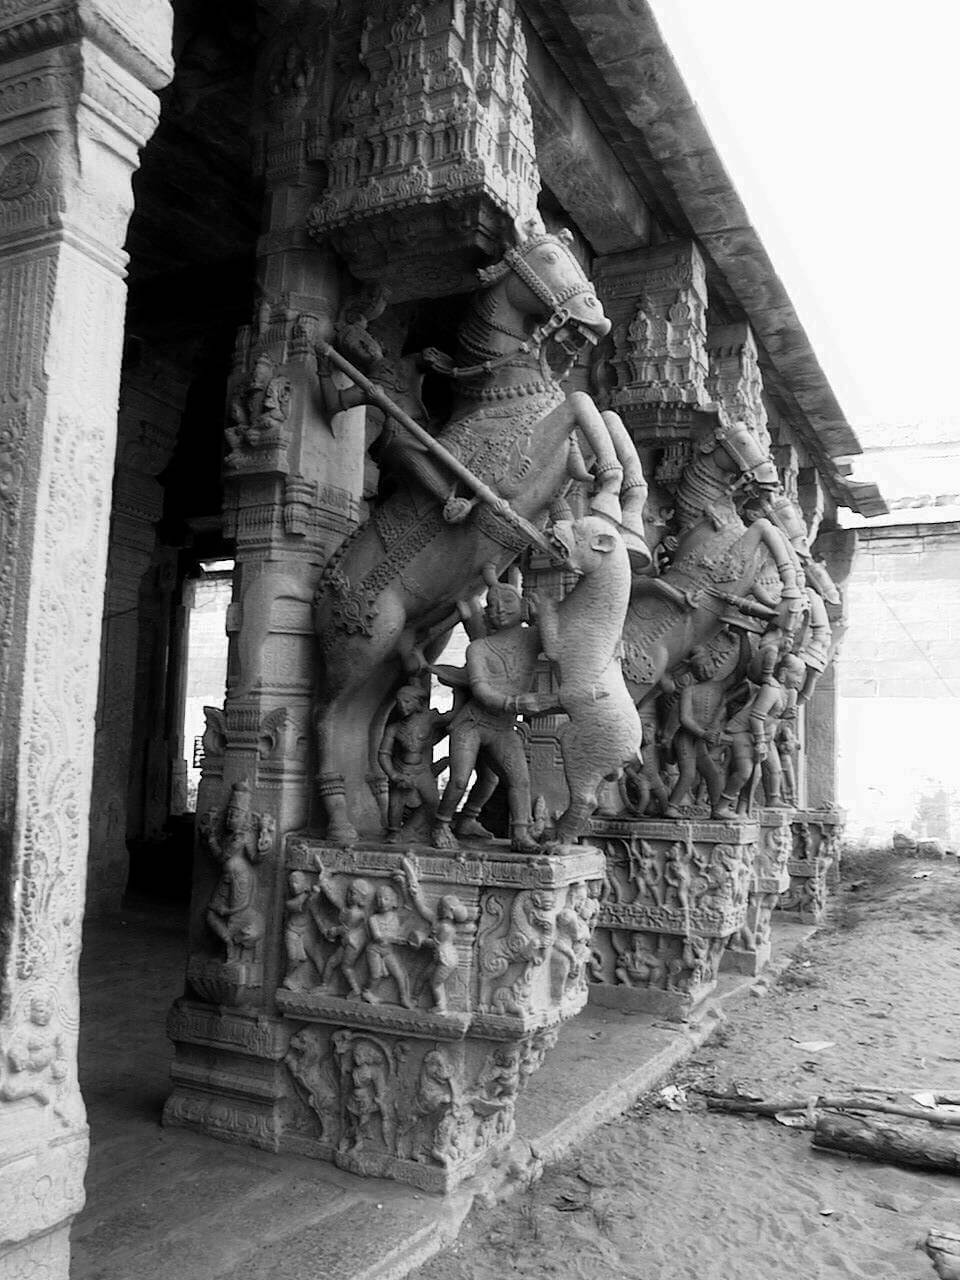 ಶ್ರೀ ರಂಗನಾಥಸ್ವಾಮಿ ದೇವಸ್ಥಾನ 1000 ಸ್ತಂಭಗಳ ಸಭಾಂಗಣ